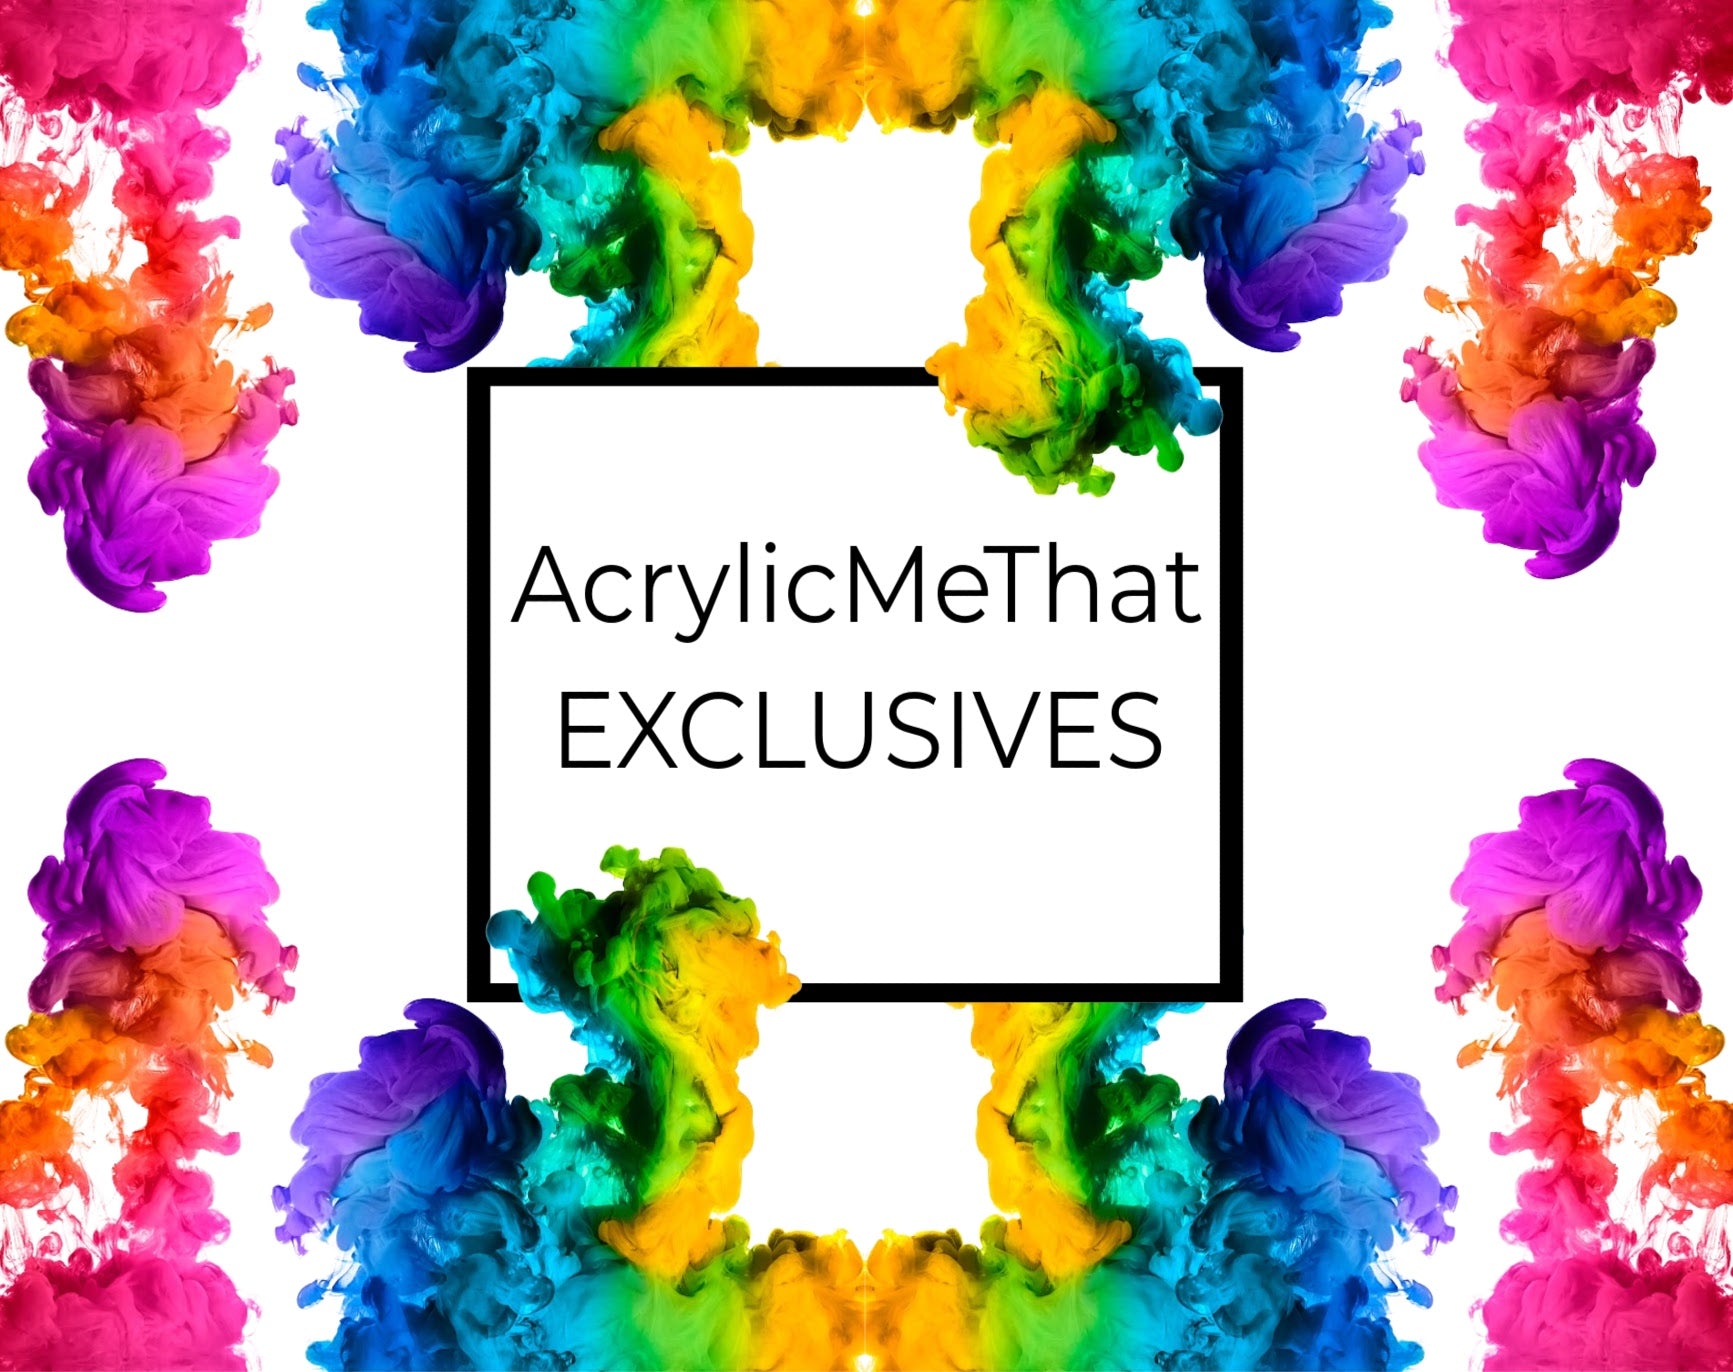 AcrylicMeThat Exclusives Acrylic Sheets